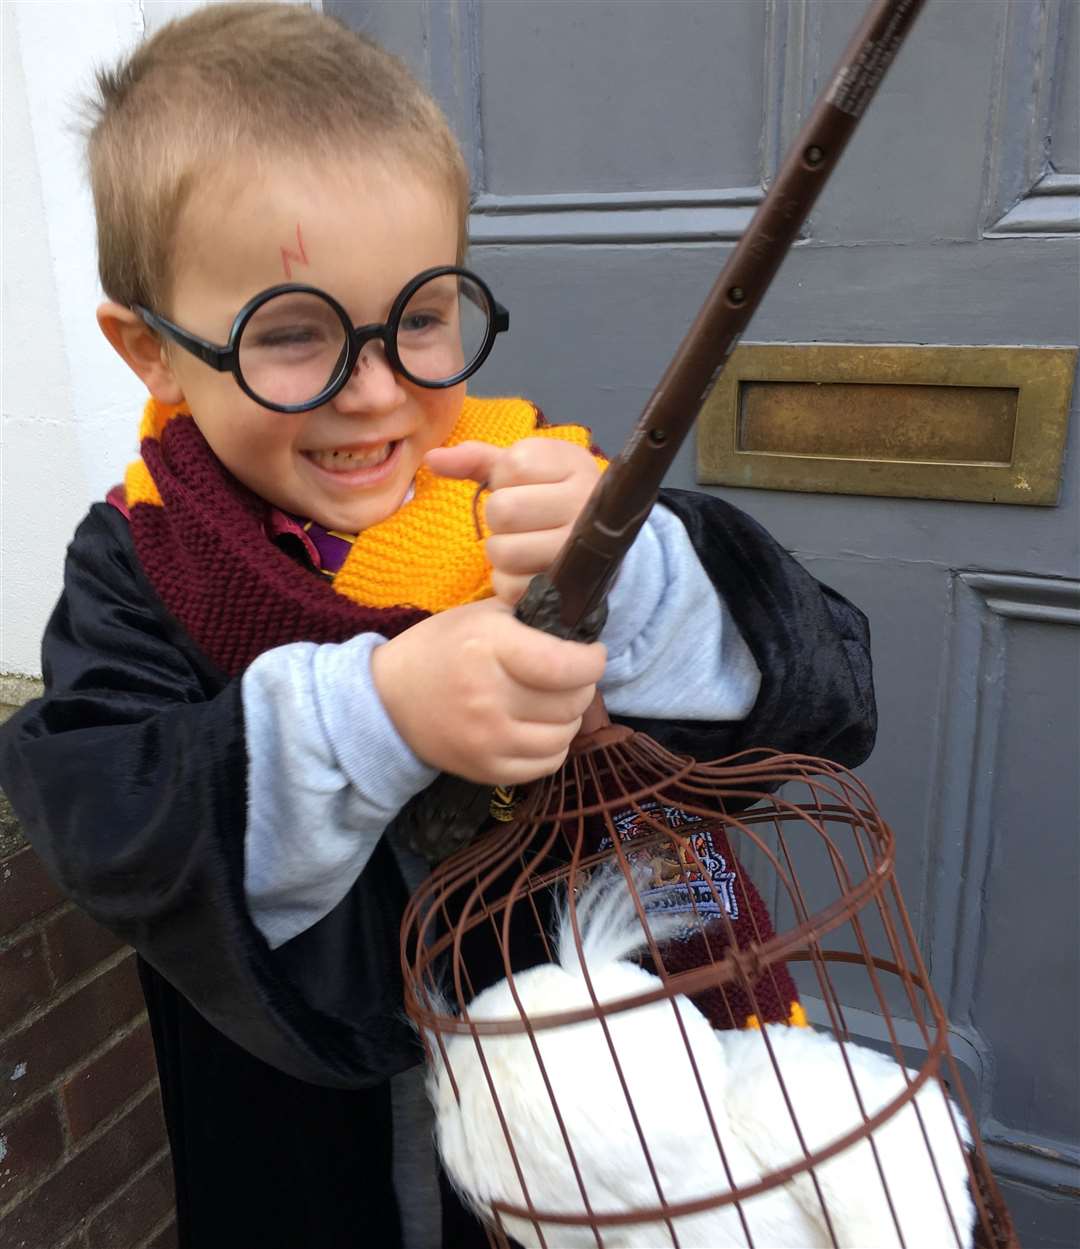 Benjamin Hine, seven, in his Harry Potter costume